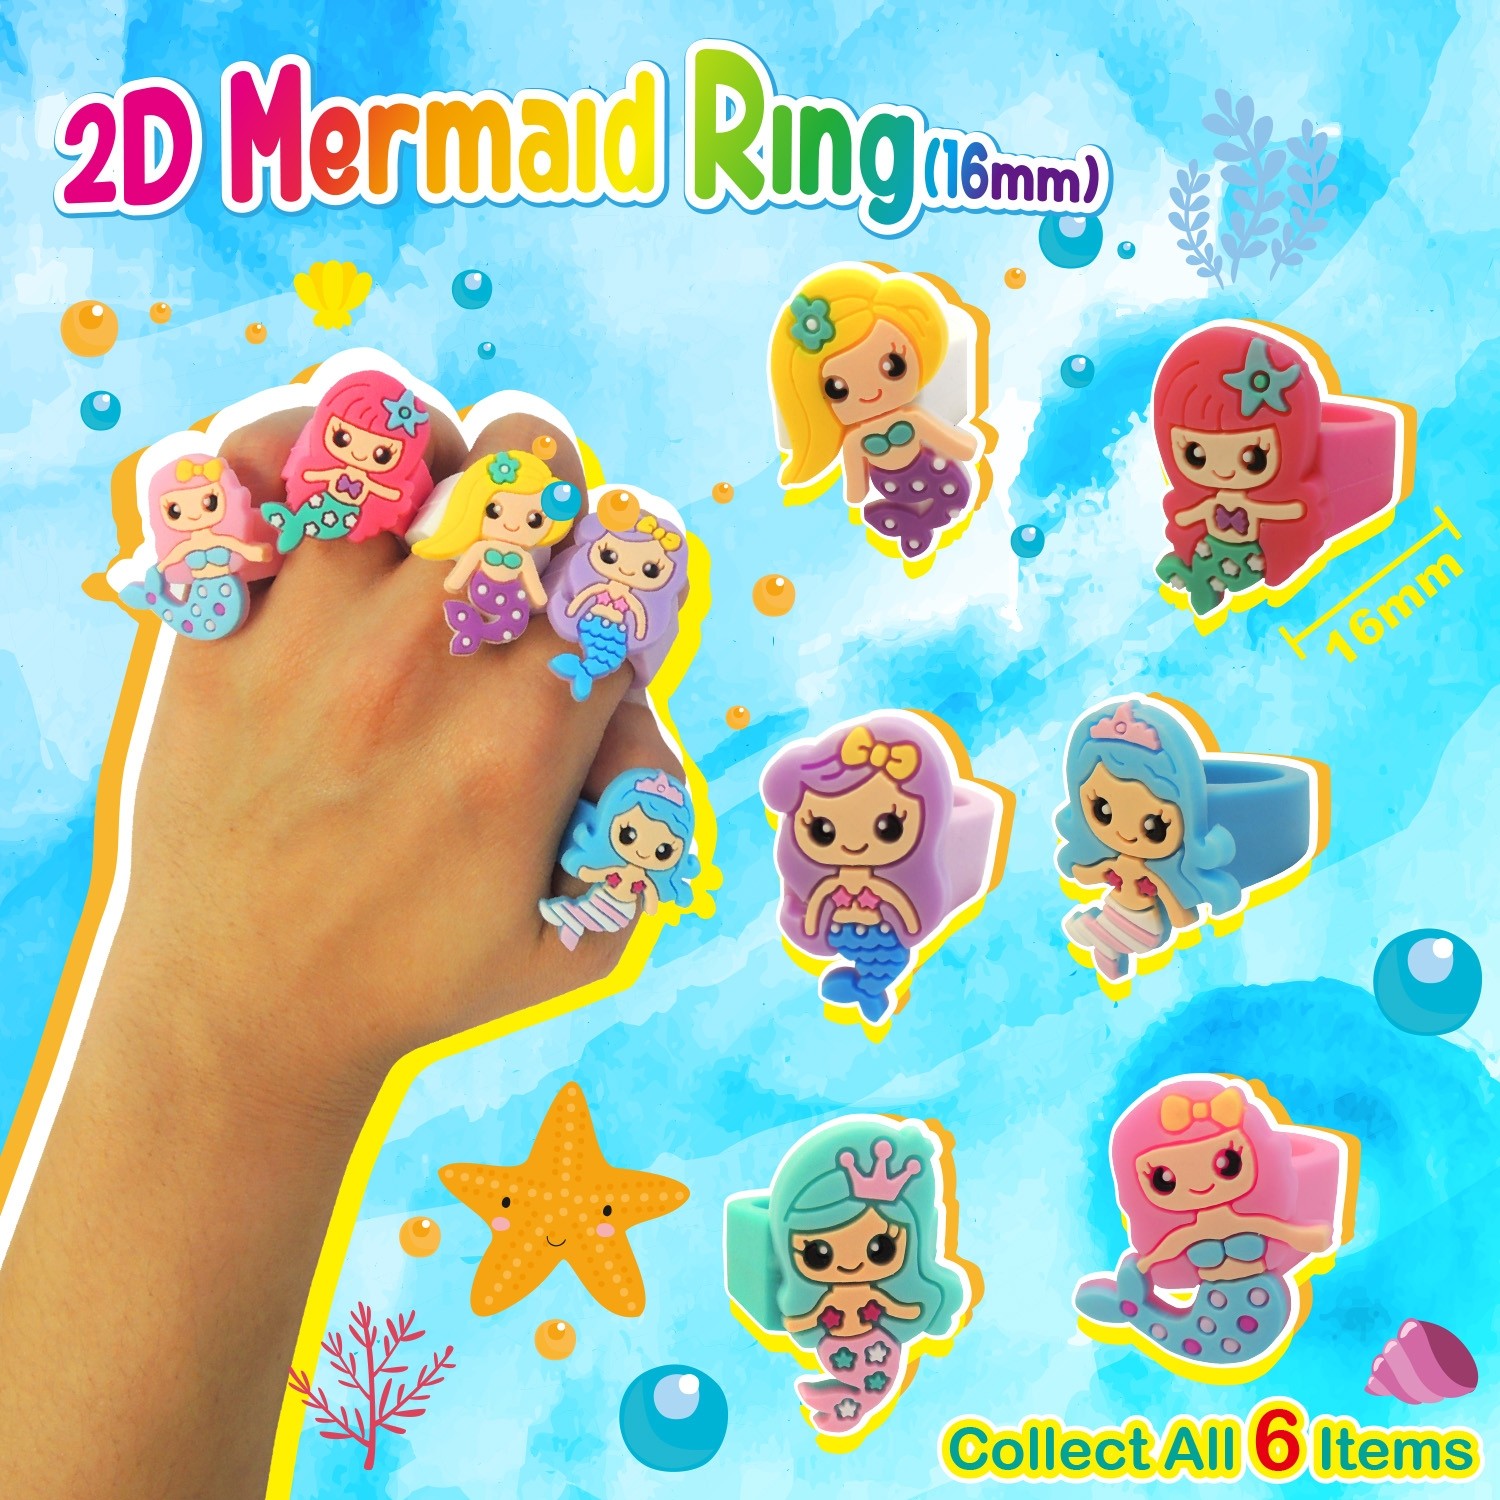  2D Mermaid Ring(16mm)